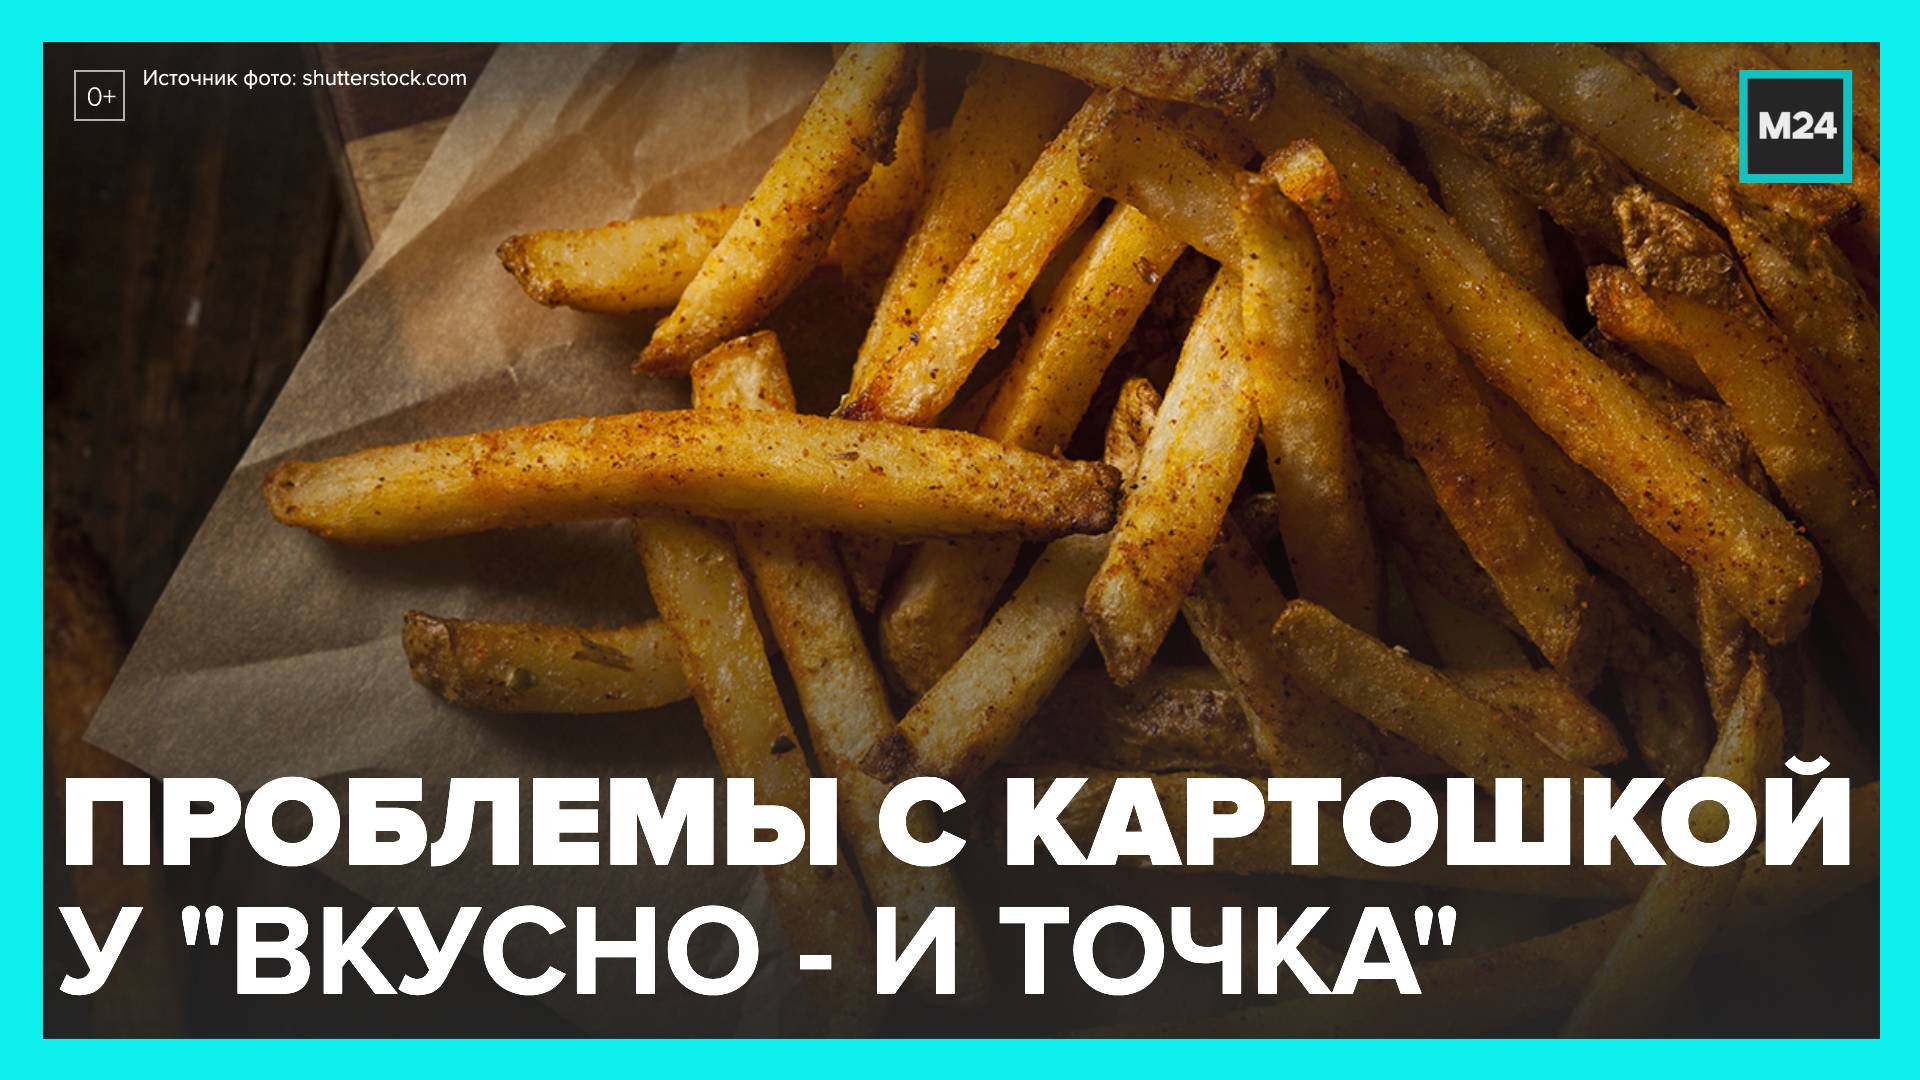 Посетители "Вкусно – и точка" недовольны качеством картошки фри - Москва 24